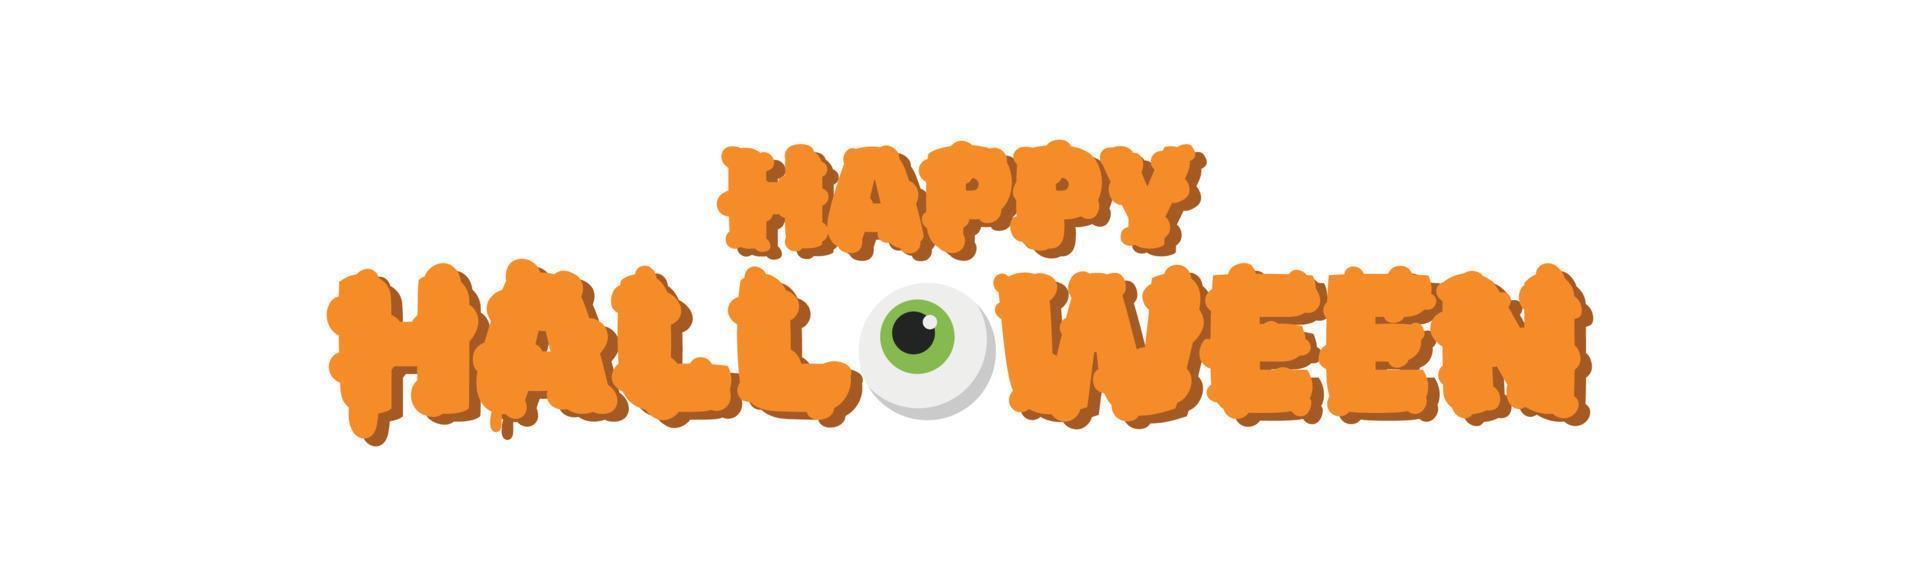 felicitaciones por la festividad de los muertos, feliz halloween - vector